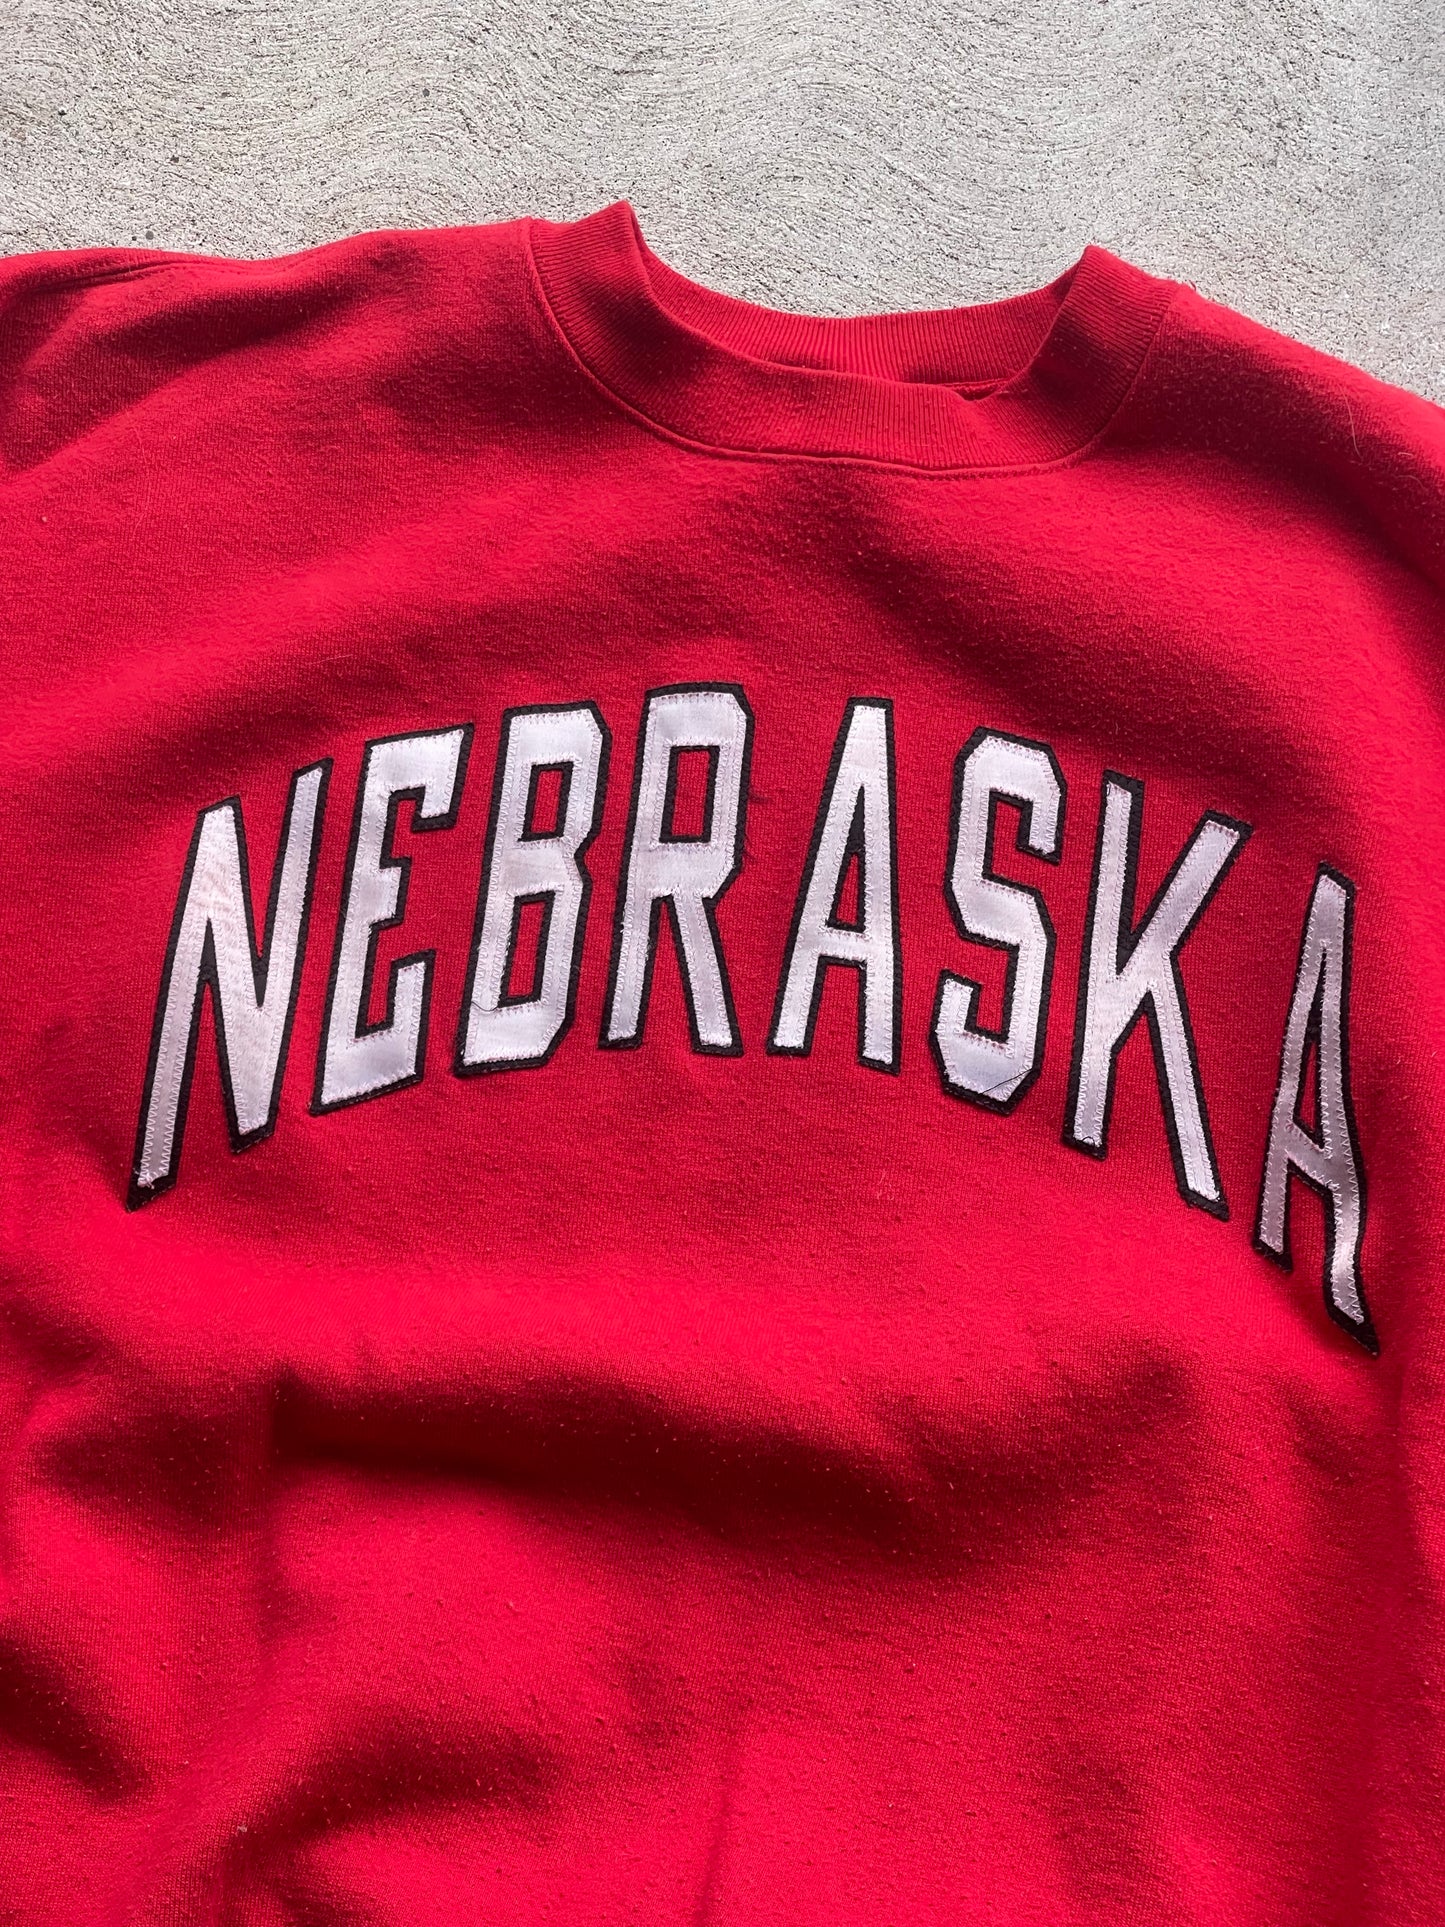 Vintage Nebraska Sweatshirt - L